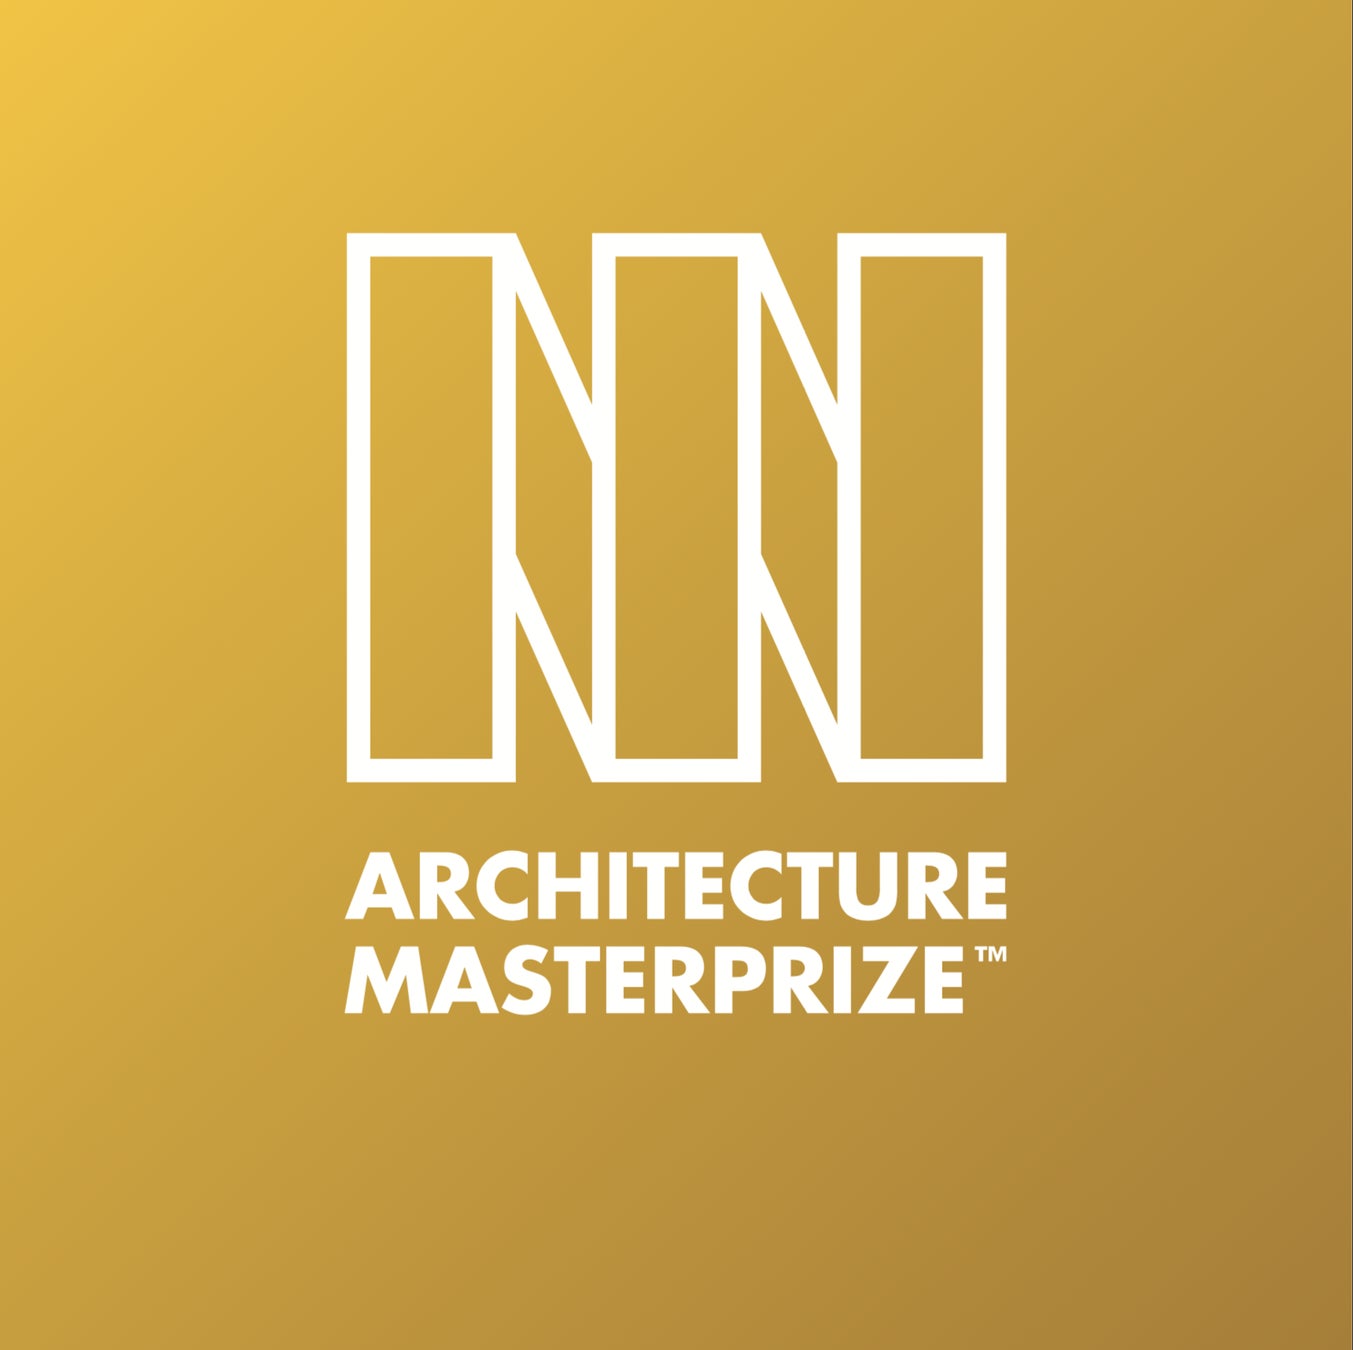 ​＜不動産ブランドSMARGを運営する株式会社グッドライフ＞「I IN」設計のSMARGデザインライン「THELIFE」世界的な建築賞「The Architecture MasterPrize™」受賞のサブ画像2